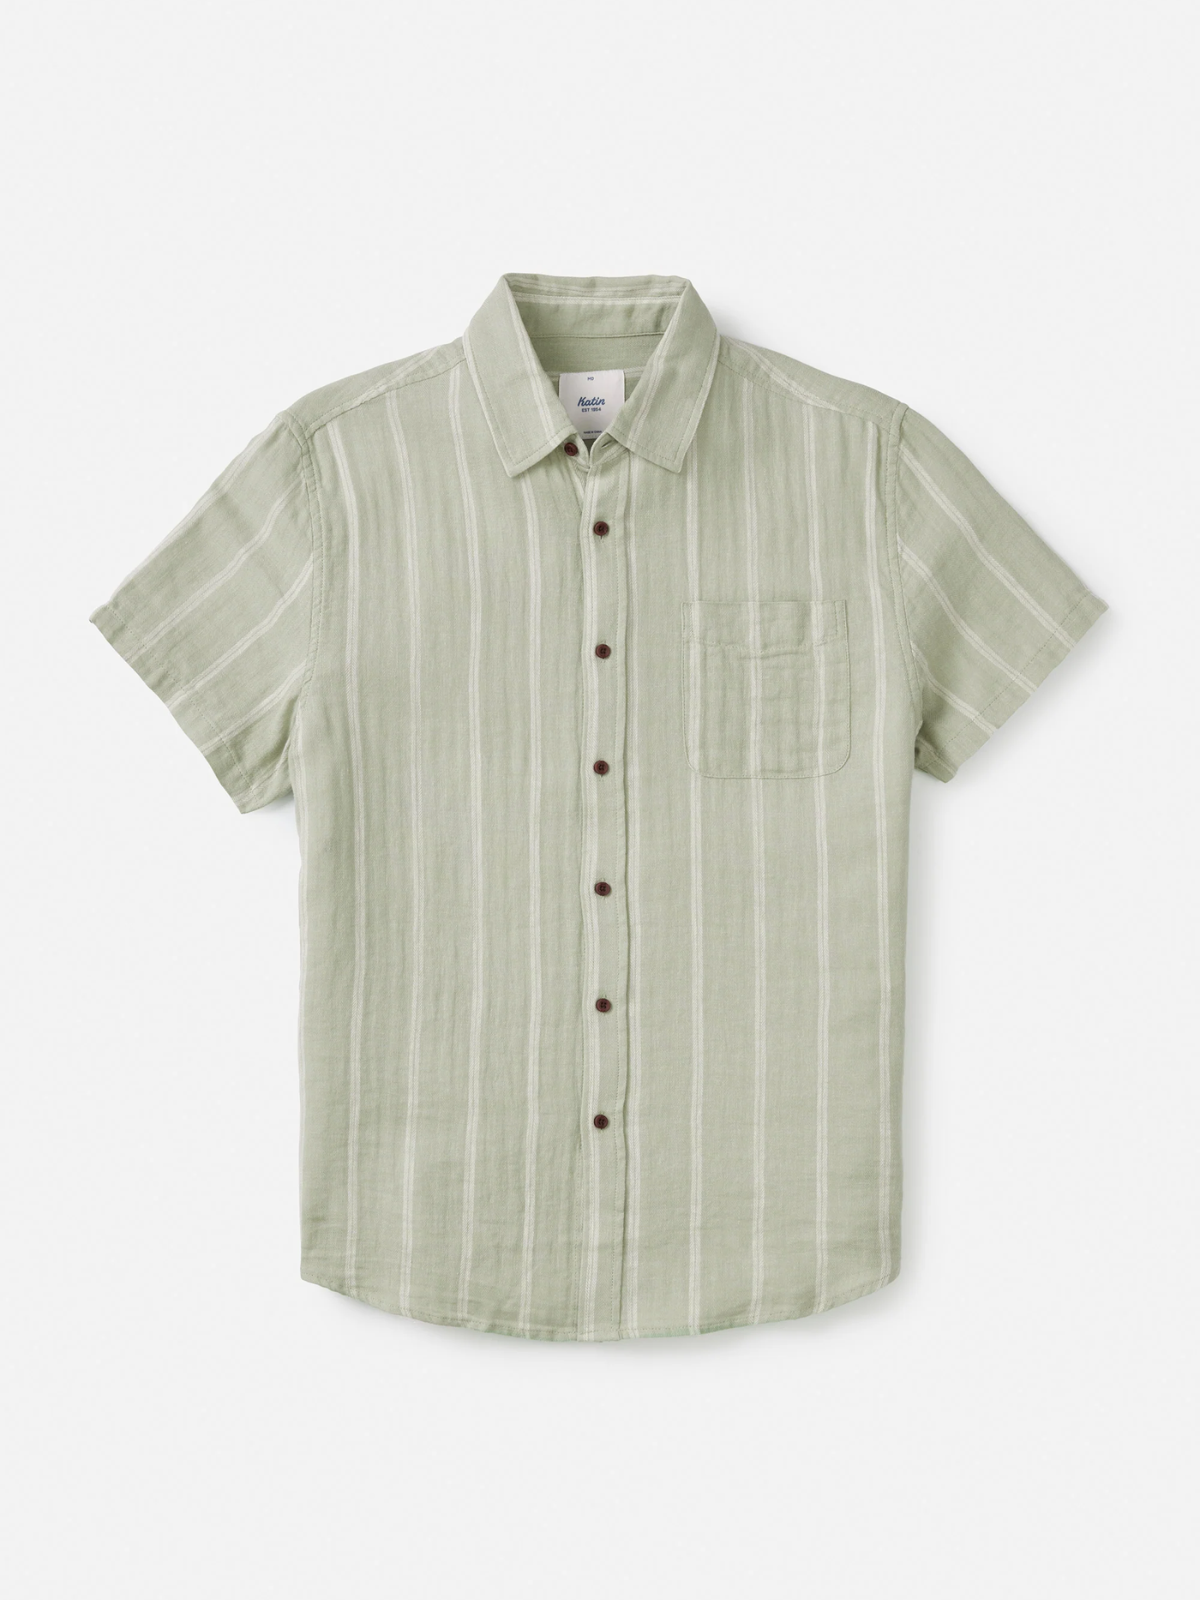 Katin Alan Shirt Desert Sage Stripe  Kempt Mens Clothing Store Athens GA UGA